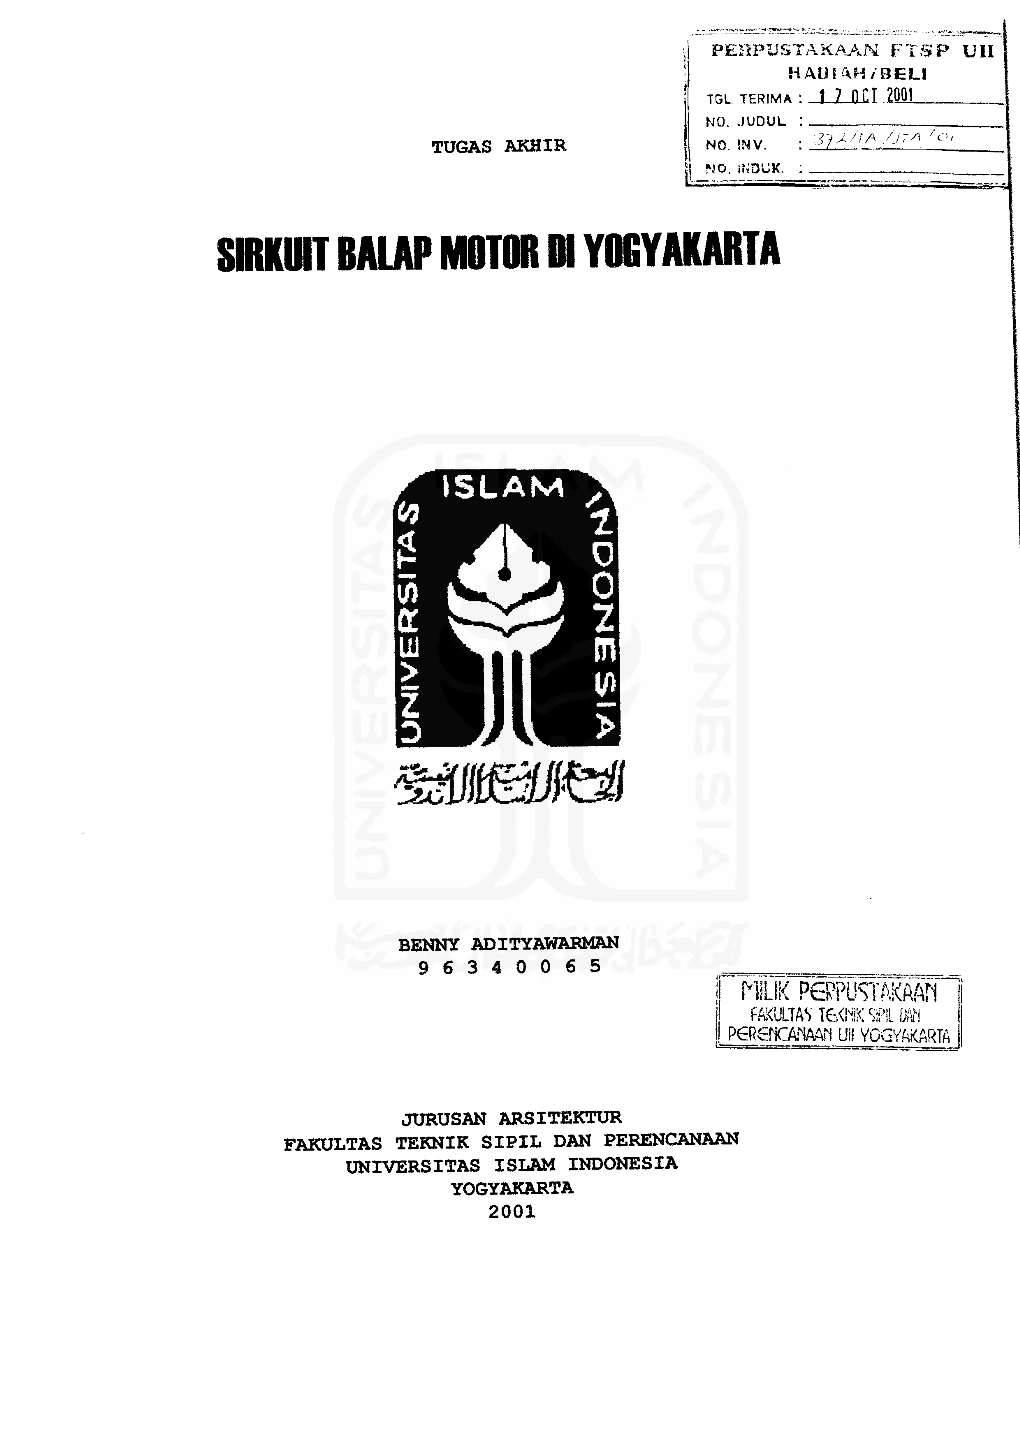 Sirkuit Balap Motor in Yogyakarta